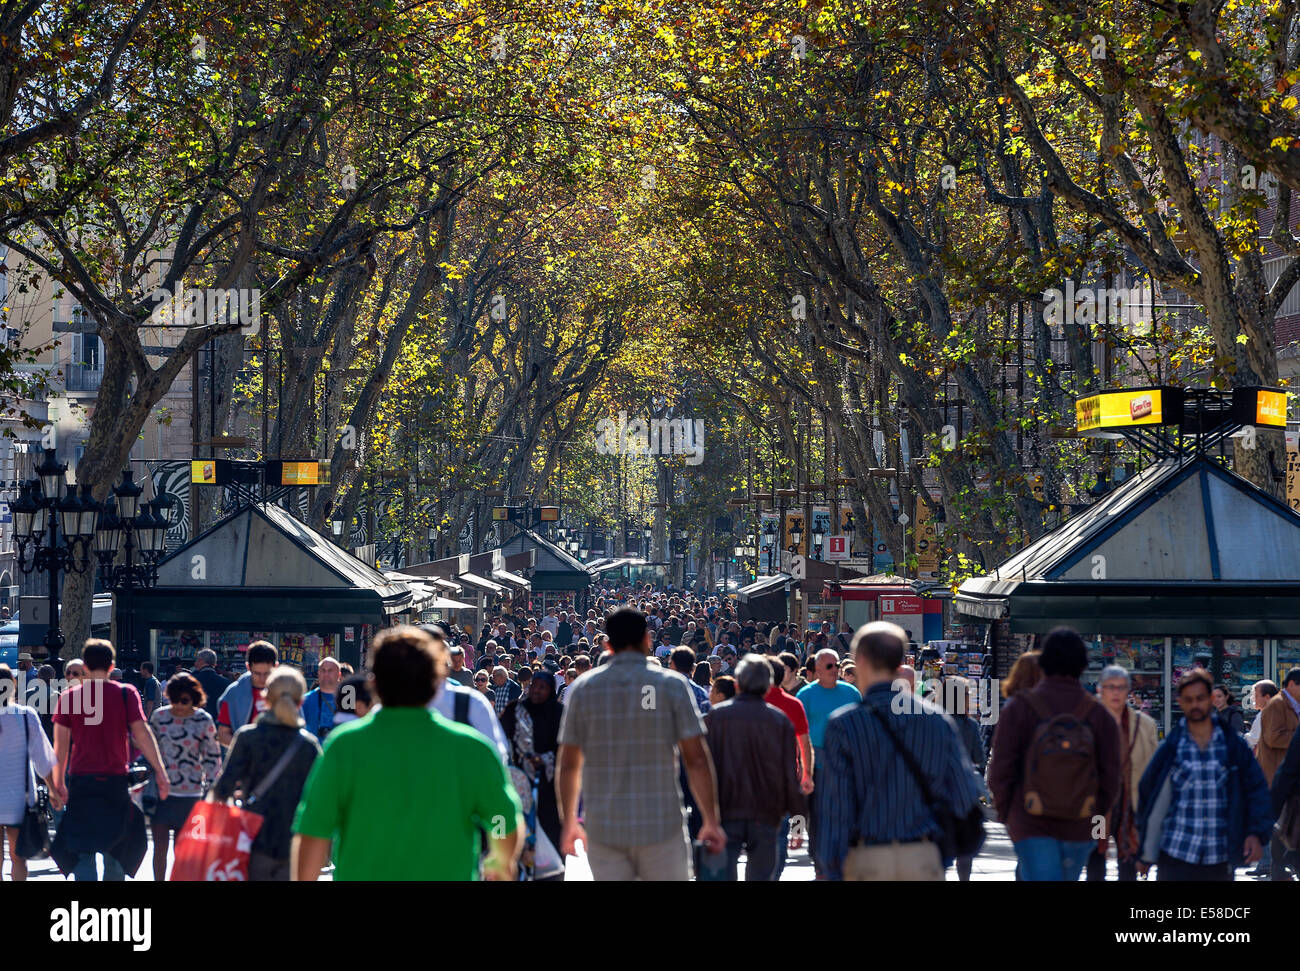 La foule des touristes et des Espagnols populaires La Rambla, Barcelone, Espagne Banque D'Images